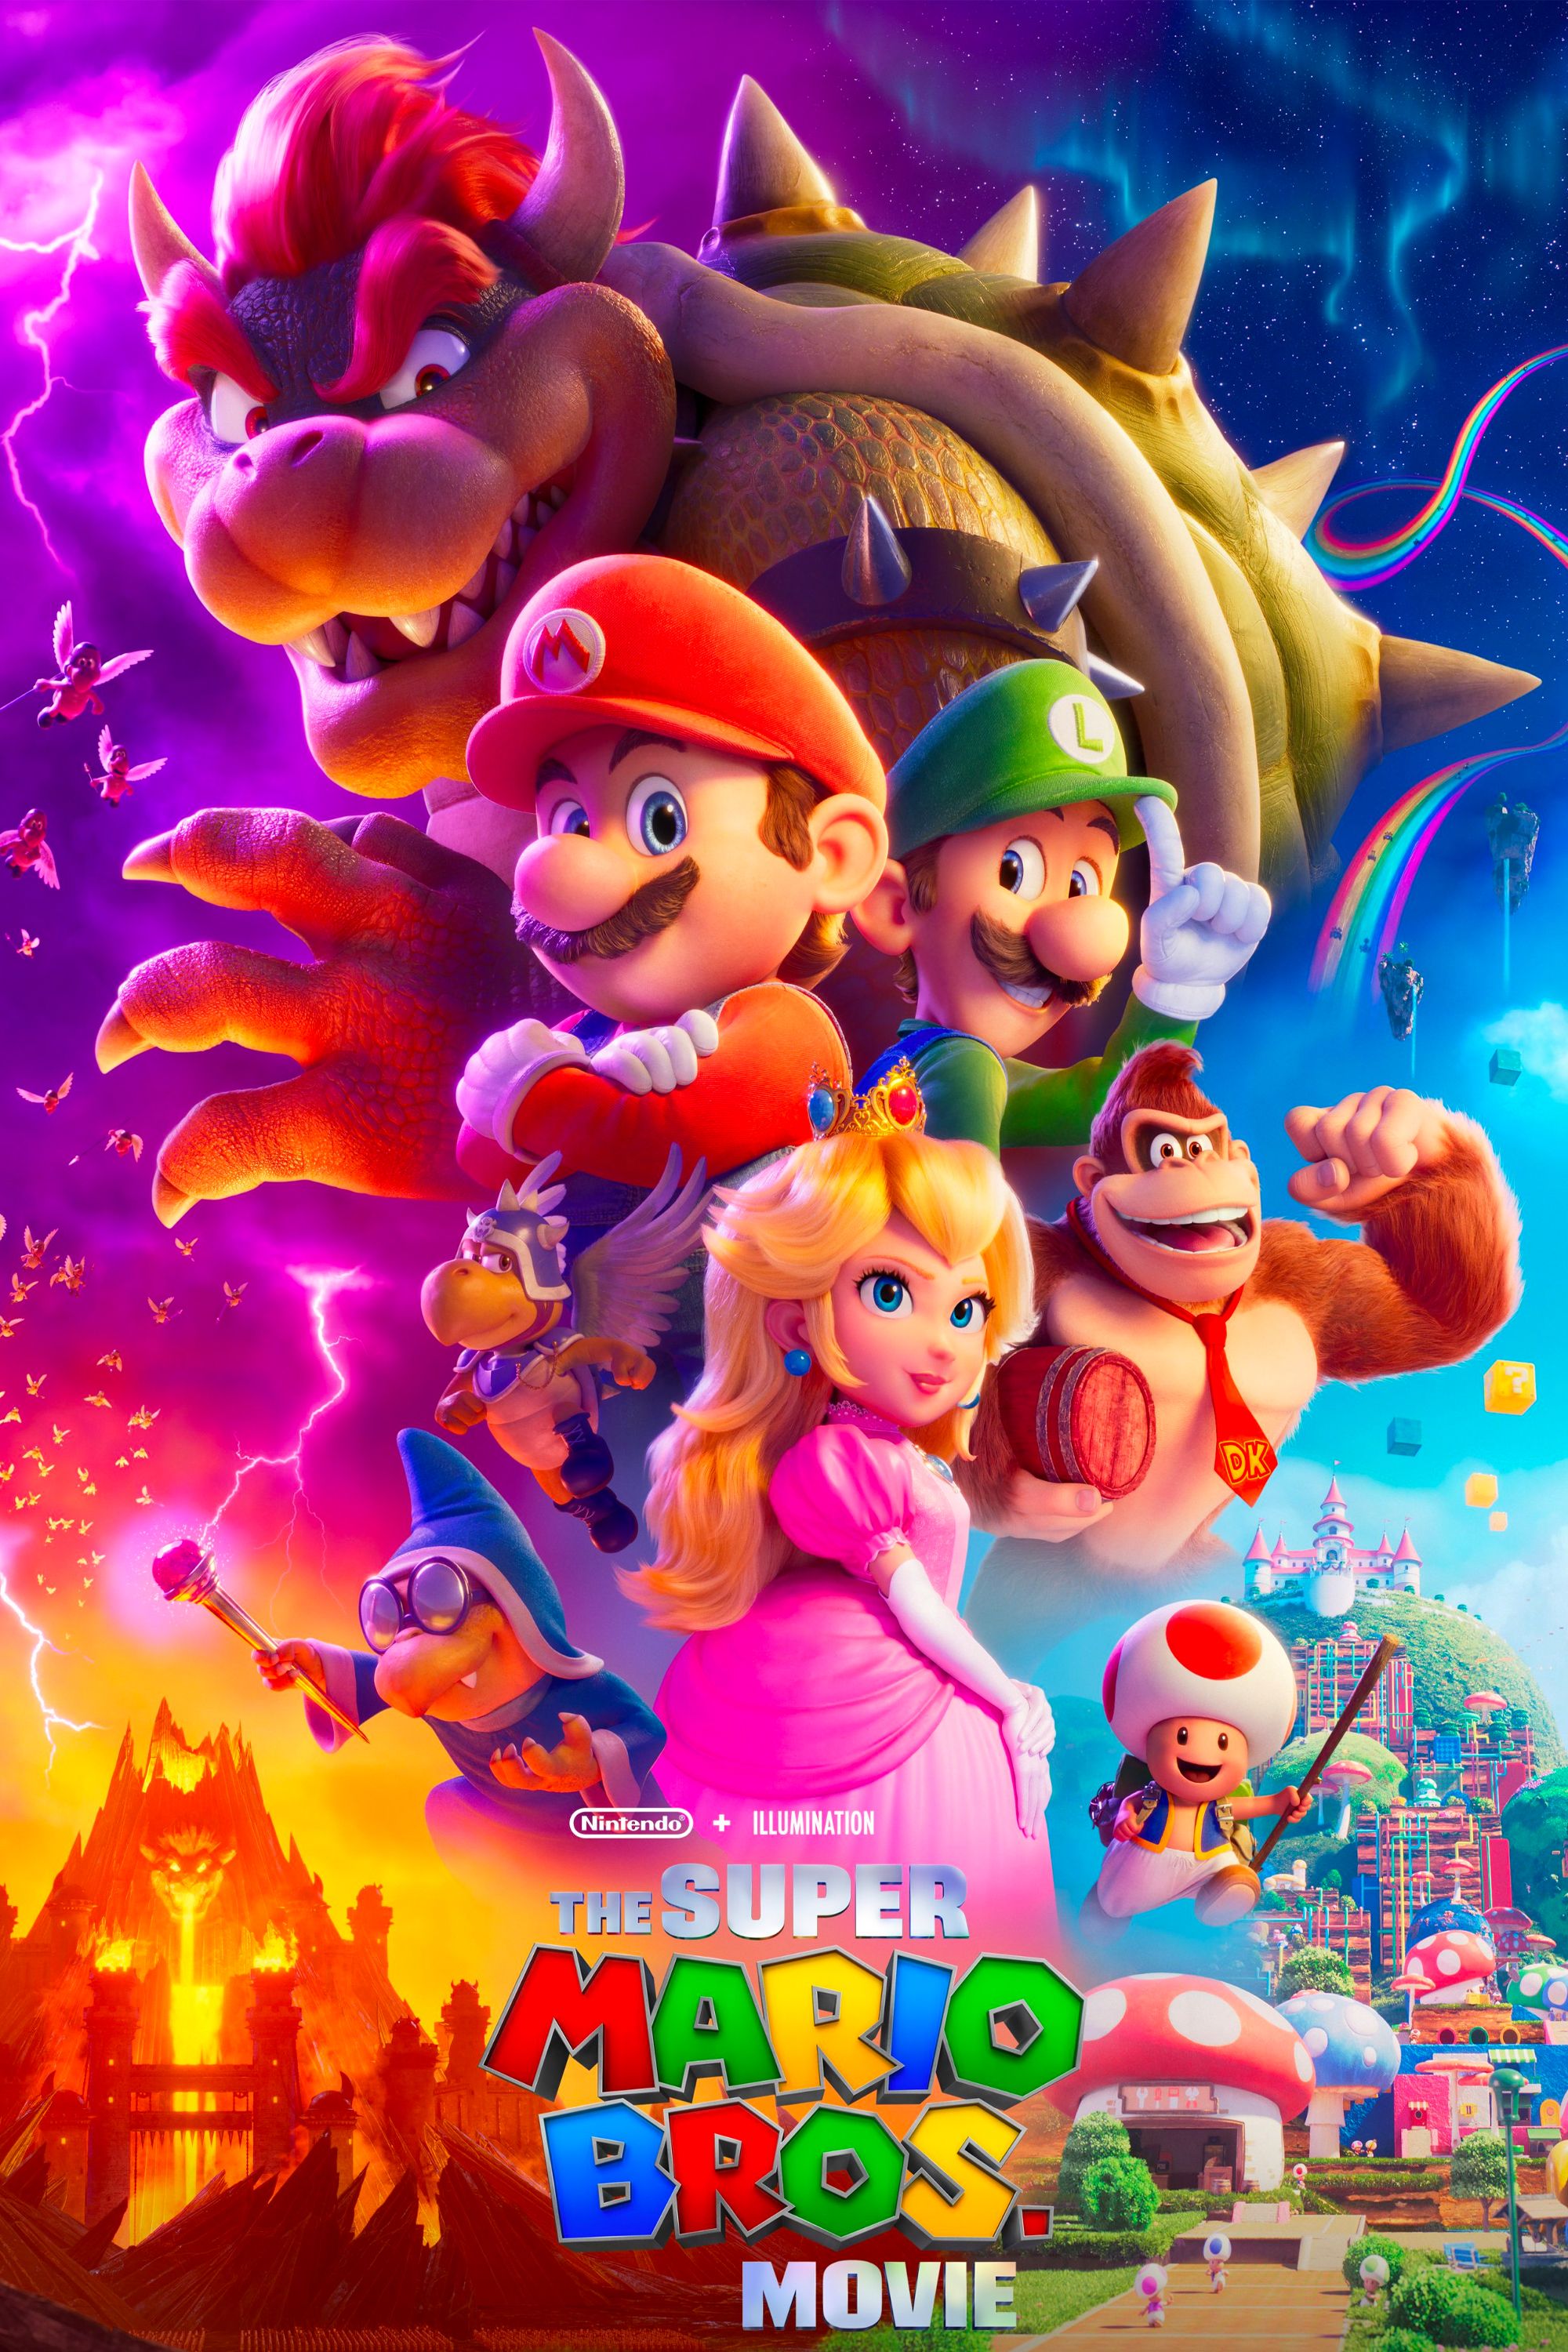 Super Mario Party vs. Mario Party Superstars